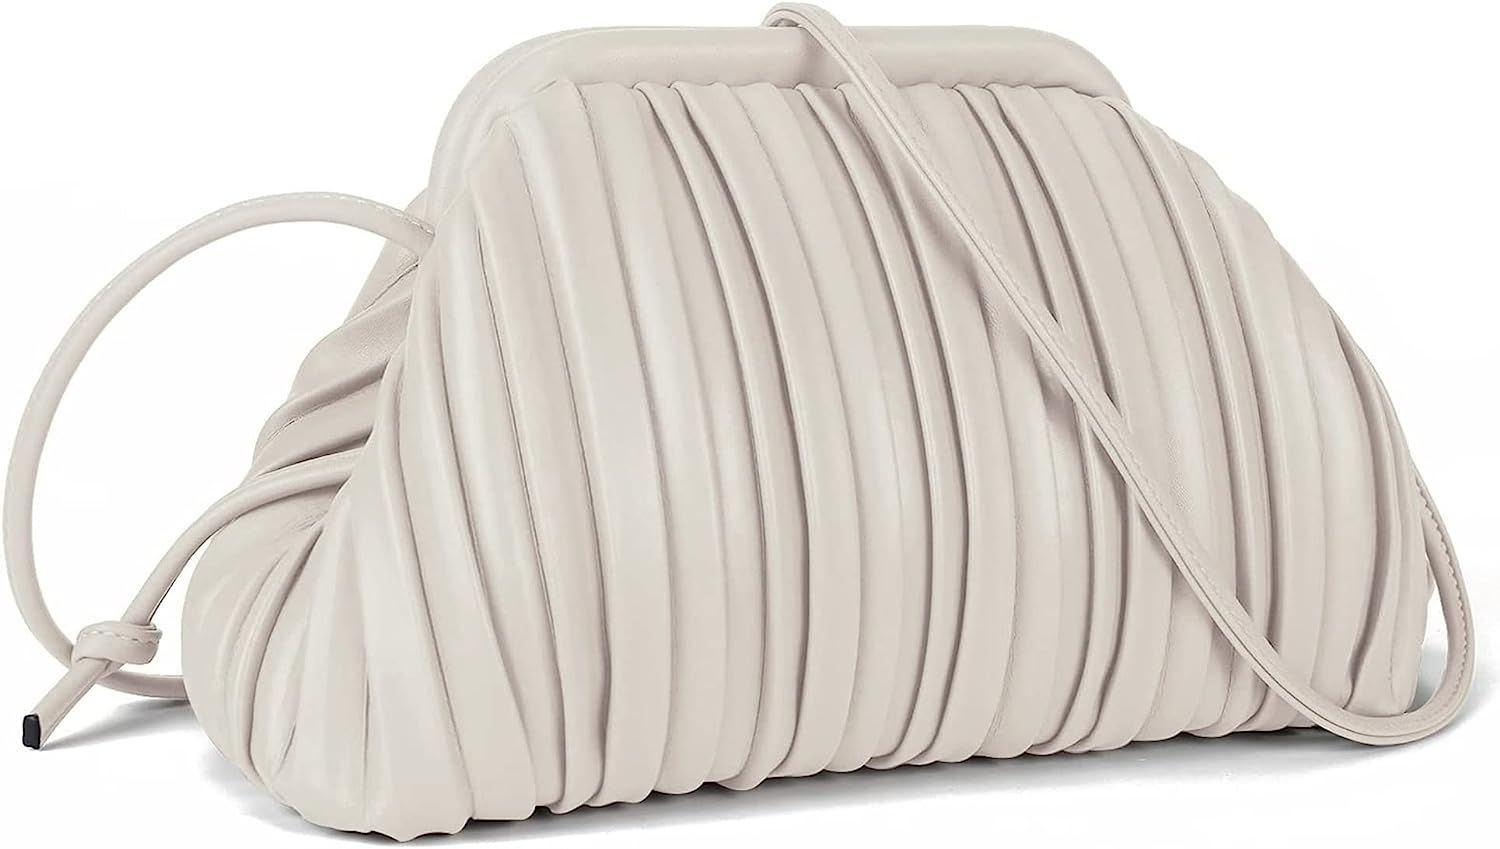 NIUEIMEE ZHOU Ruched Dumpling Bag for Women PU Leather Cloud Handbag Clutch Purse Retro Shoulder ... | Amazon (US)